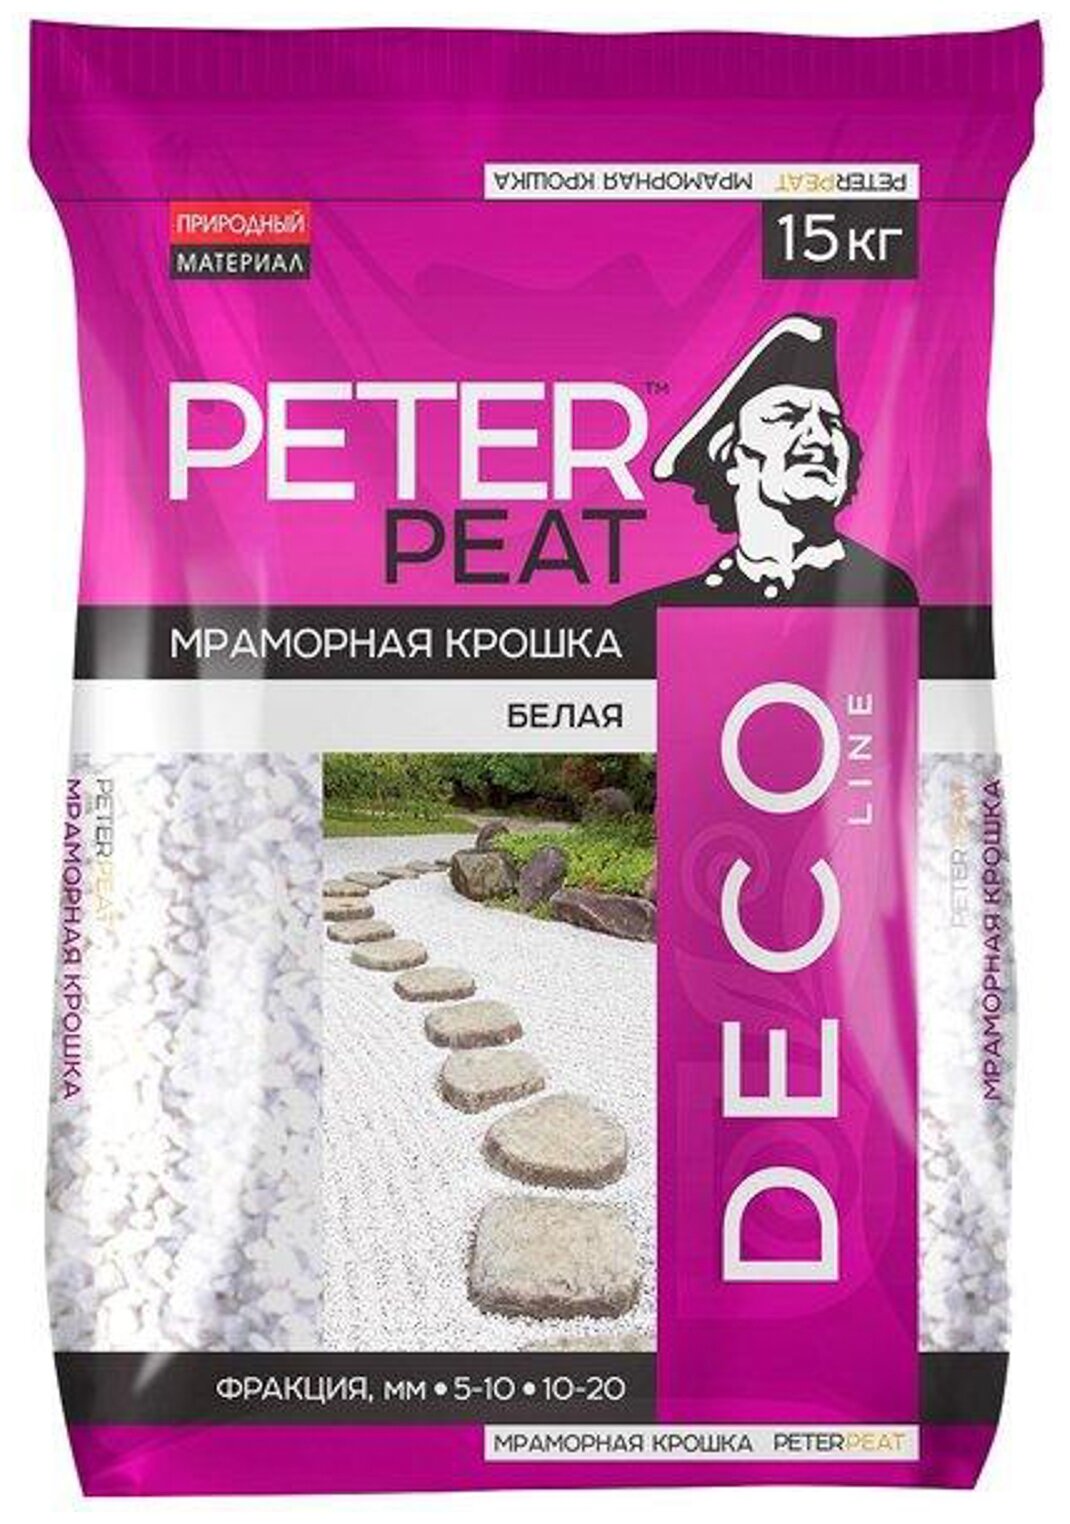 Мраморная крошка PETER PEAT Белая, фракция 10-20, линия Деко, 15кг - фотография № 2